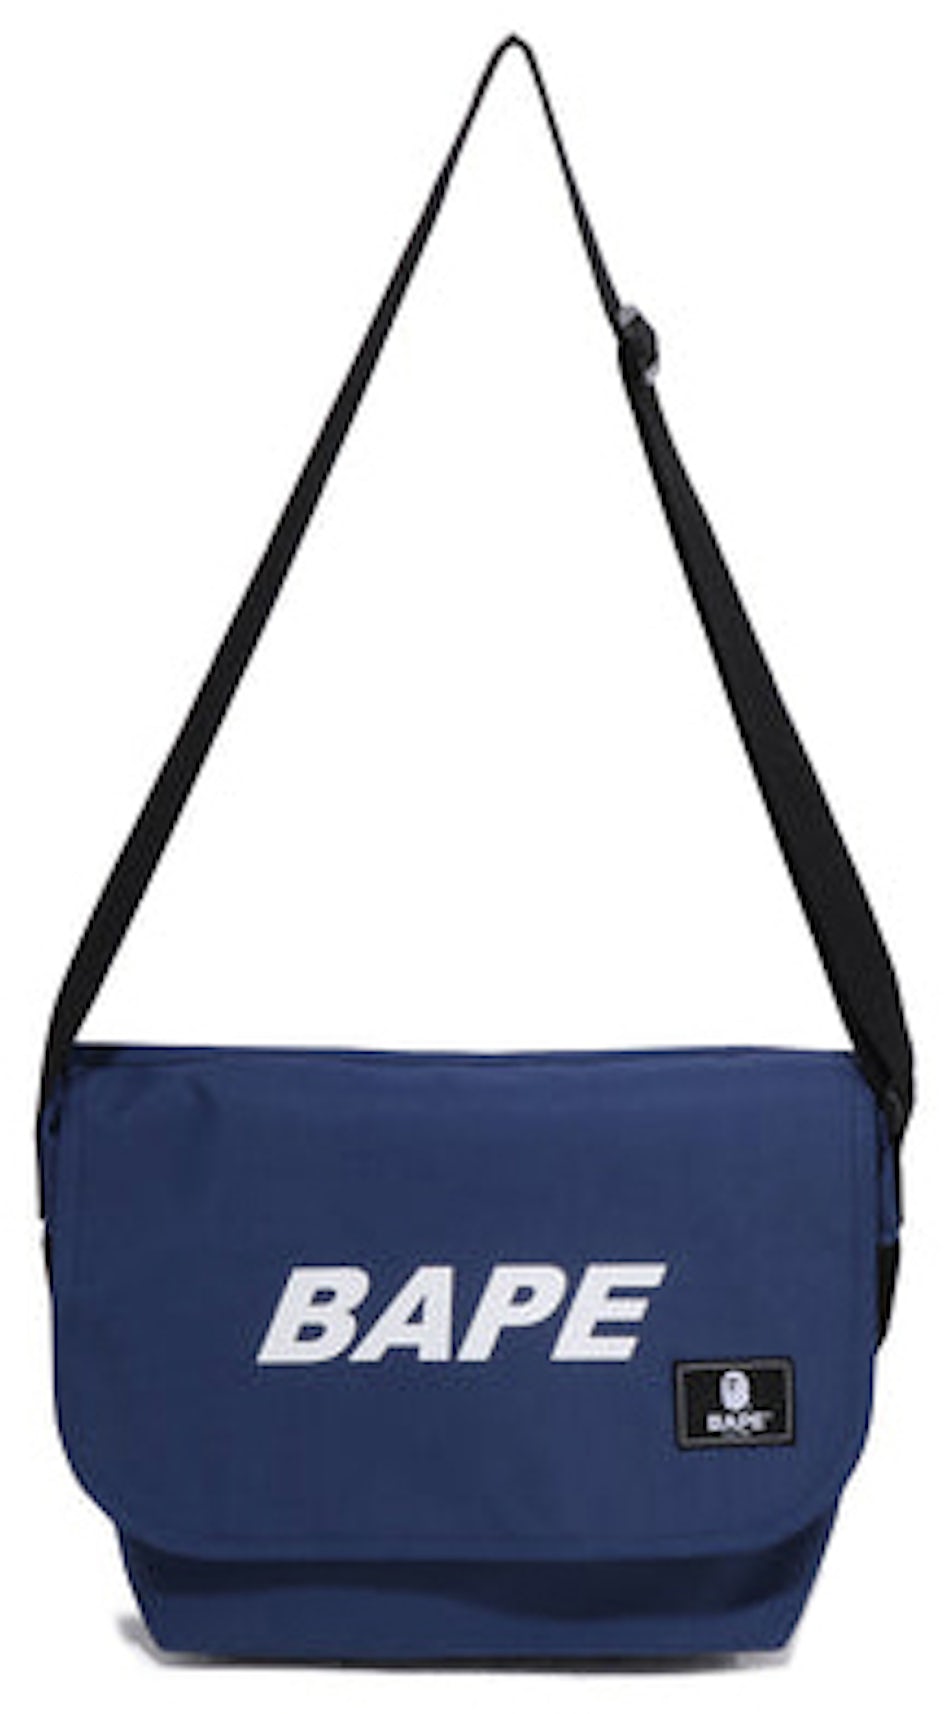 BAPE KIDS Shoulder Bag A Bathing Ape 2022 AUTUMN/WINTER Collection CAMO non  Box